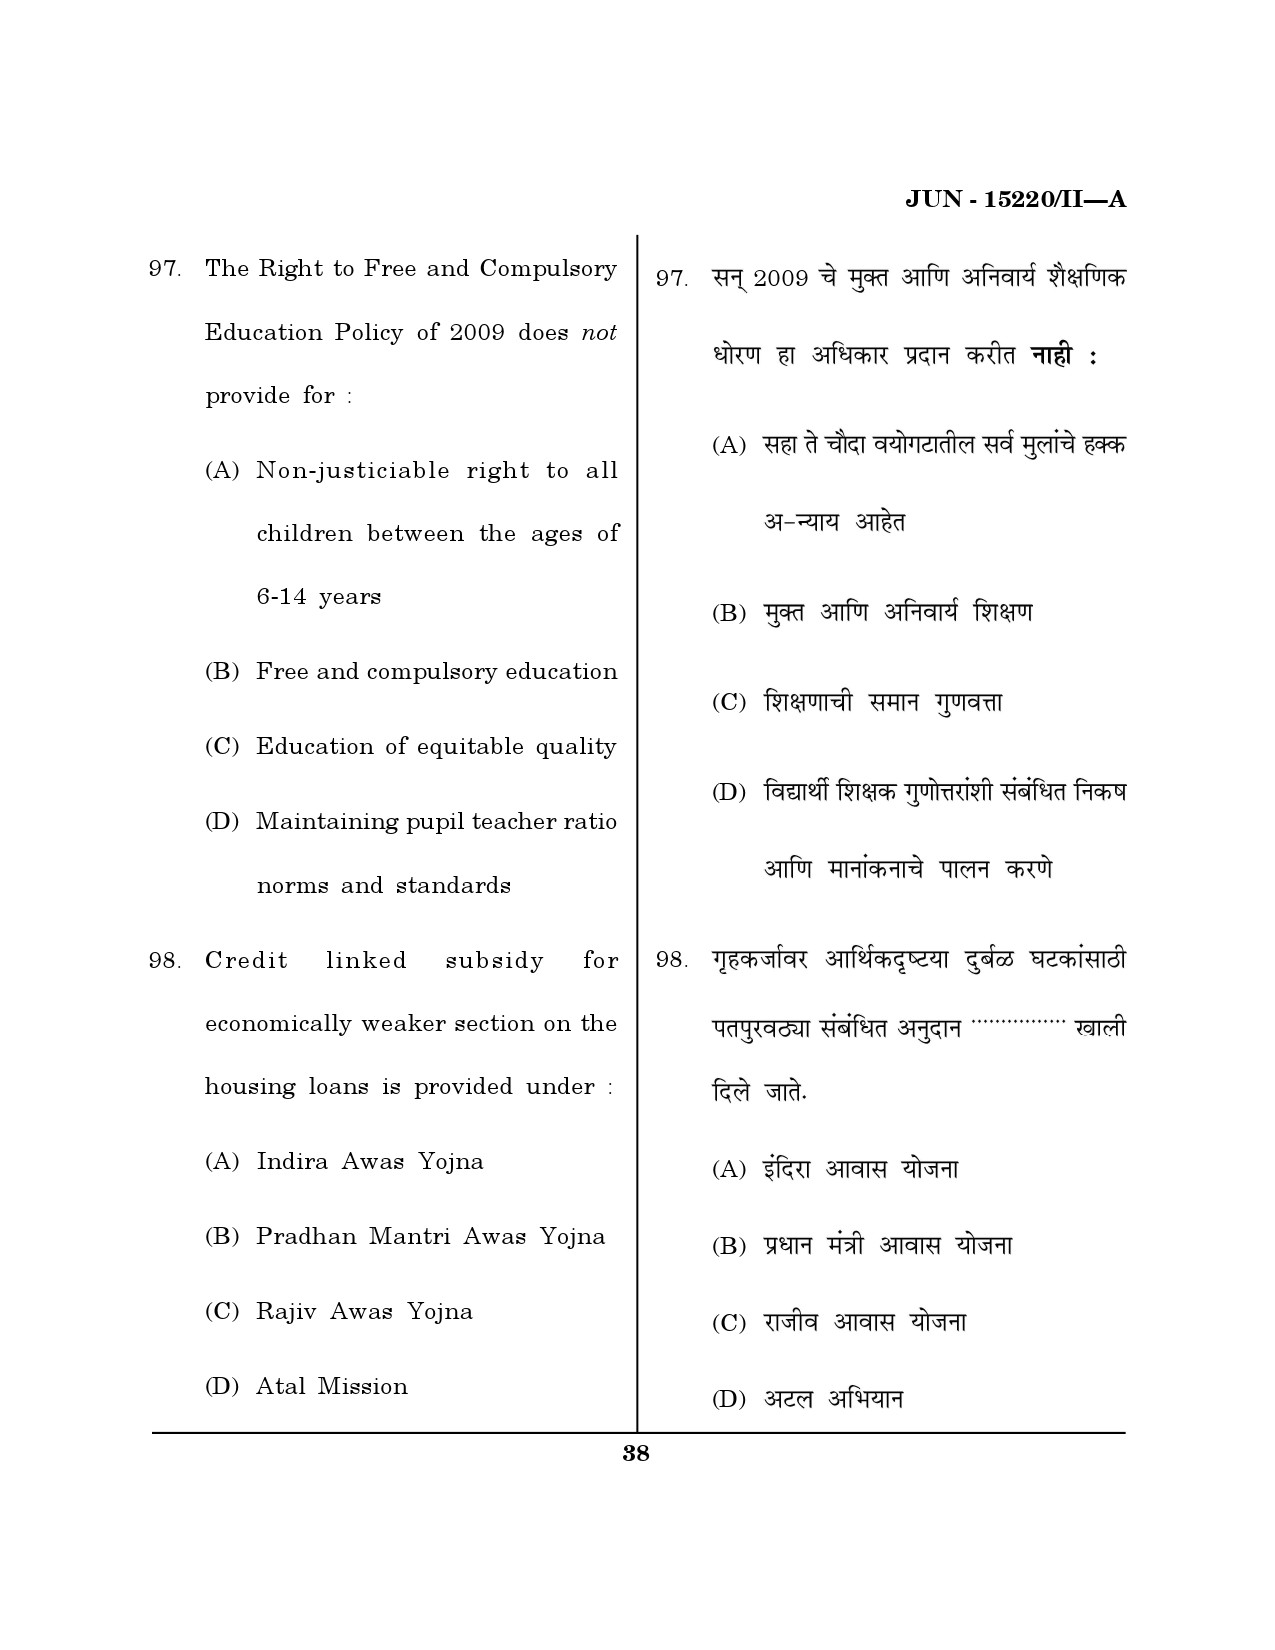 Maharashtra SET Political Science Question Paper II June 2020 37